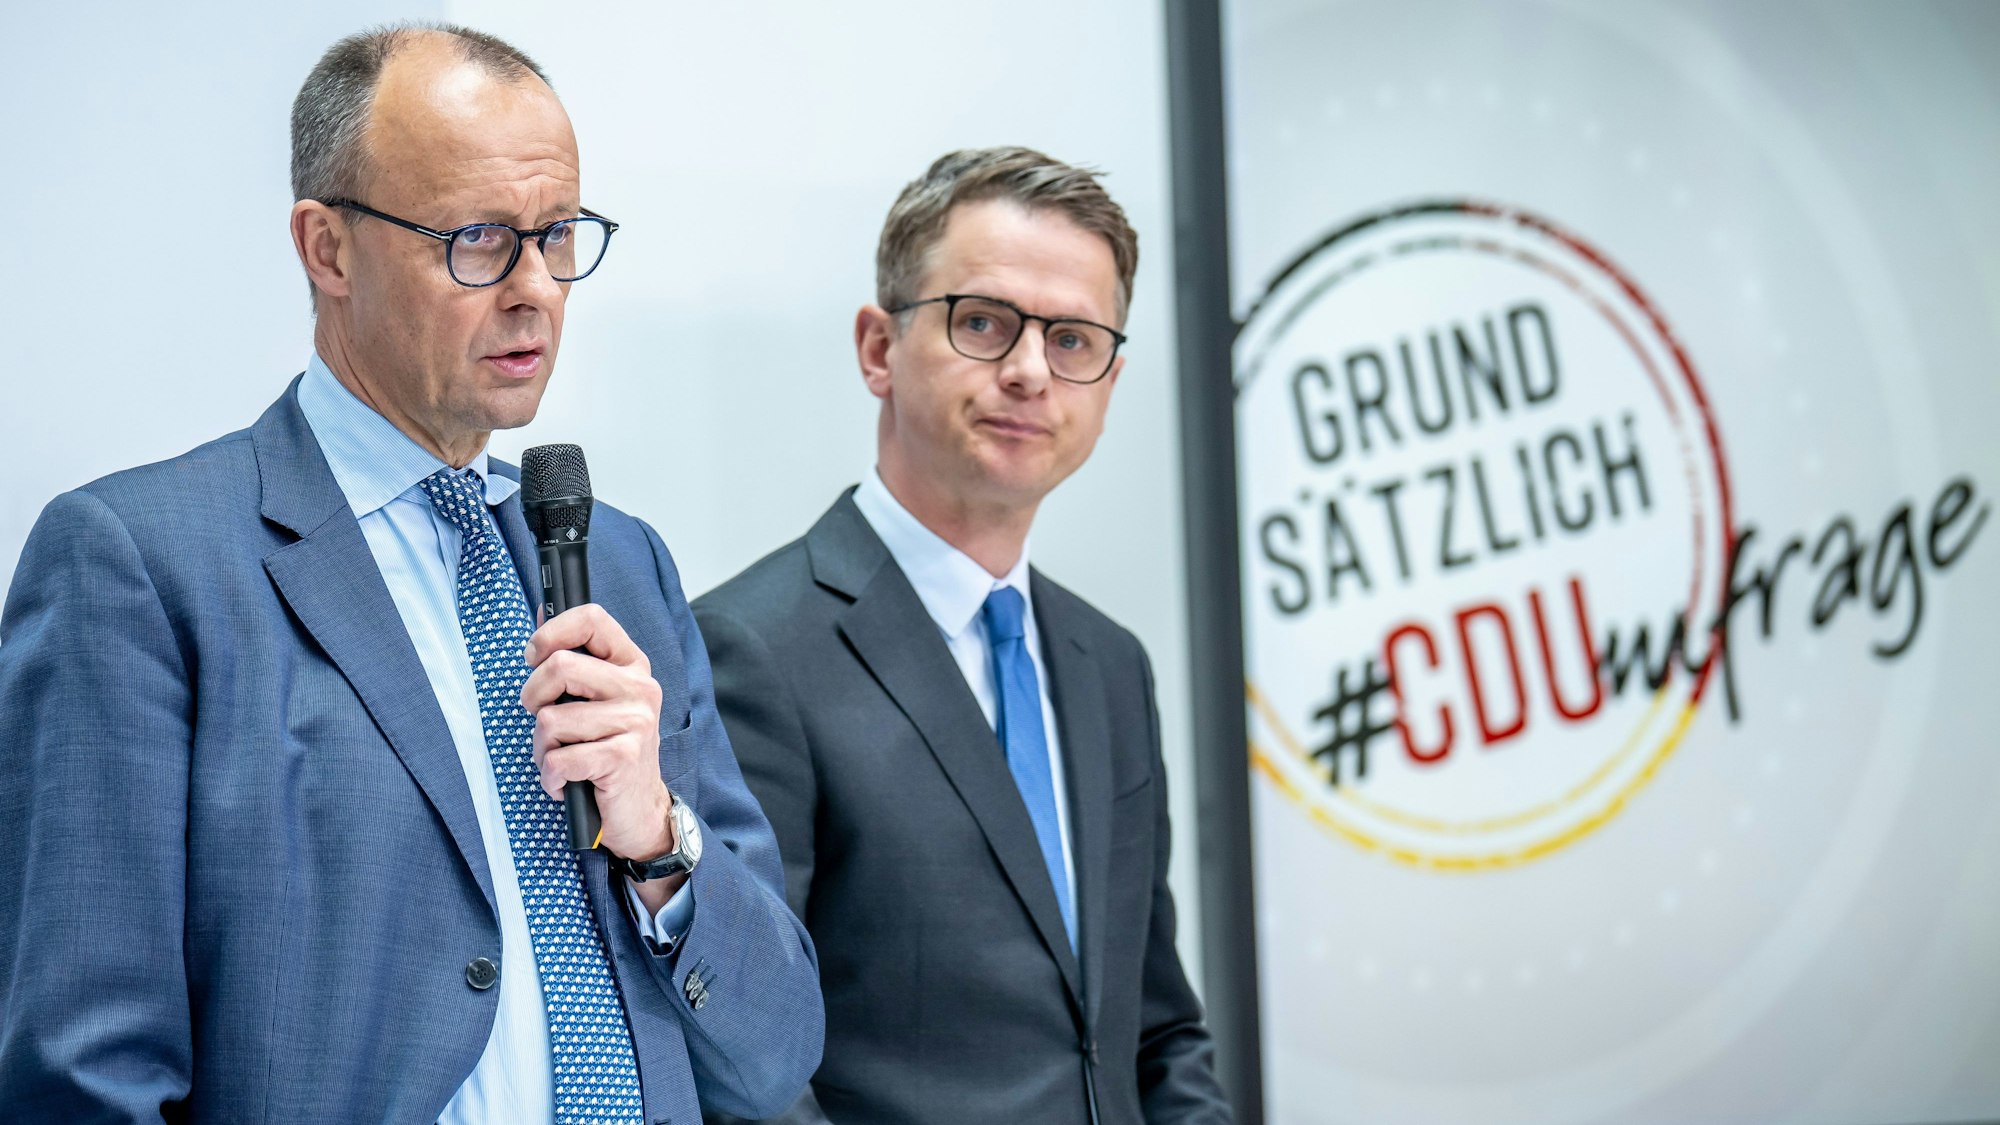 CDU-Chef Friedrich Merz steht neben dem stellvertretenden Bundesvorsitzenden Carsten Linnemann. Die CDU will einen Satz in ihrem Grundsatzprogramm ändern. (Archivbild)